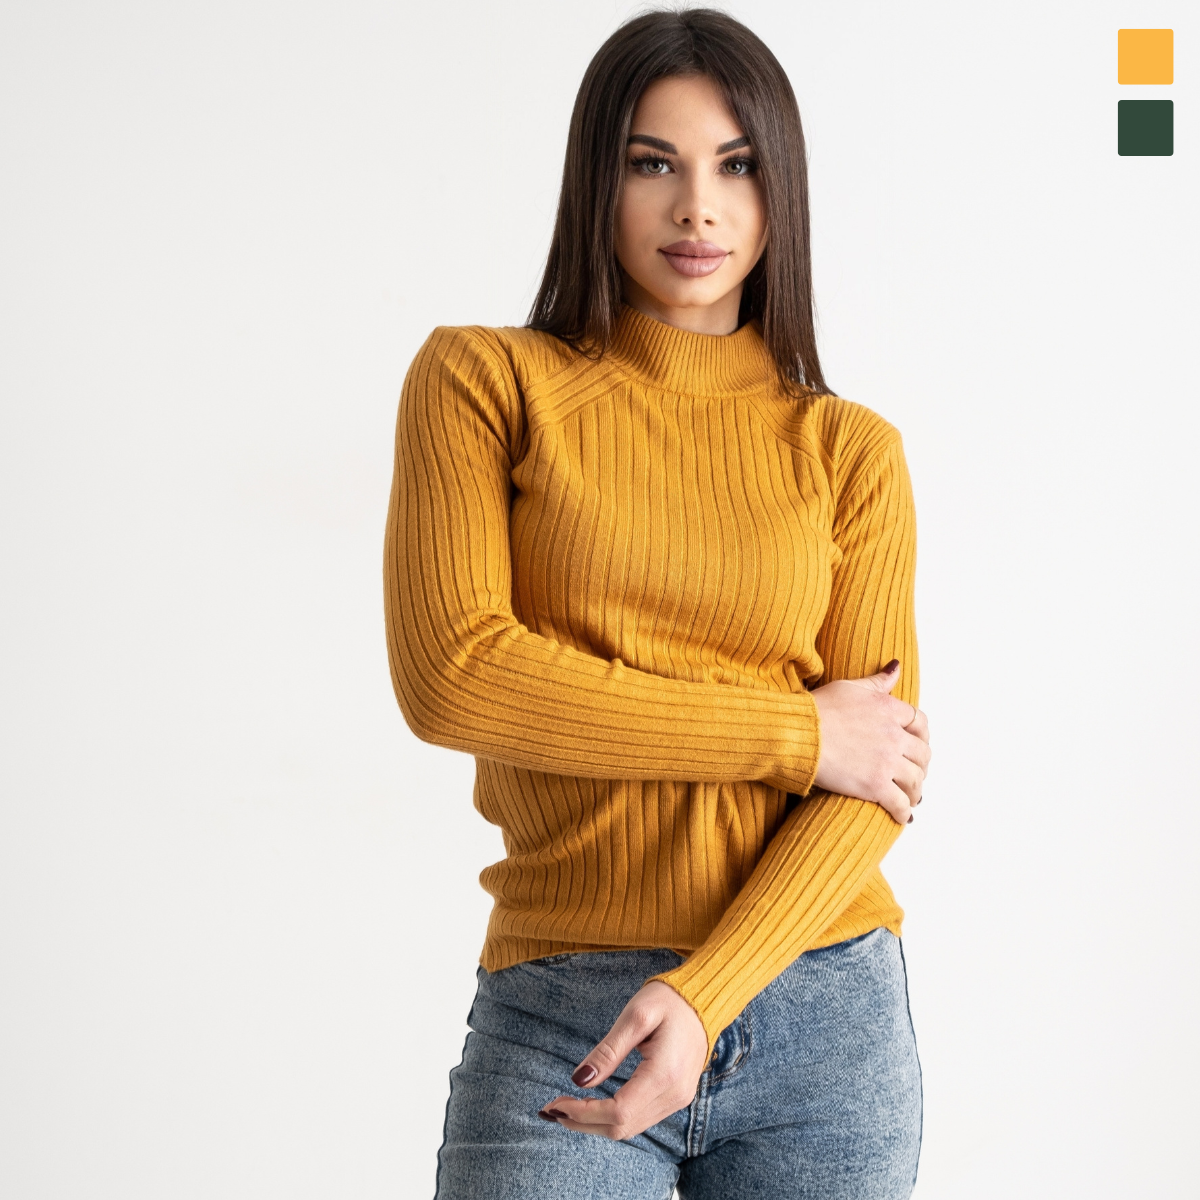 0887-4 желтый и темно-зеленый женский свитер (4 ед. один универсальный размер: 42-46)